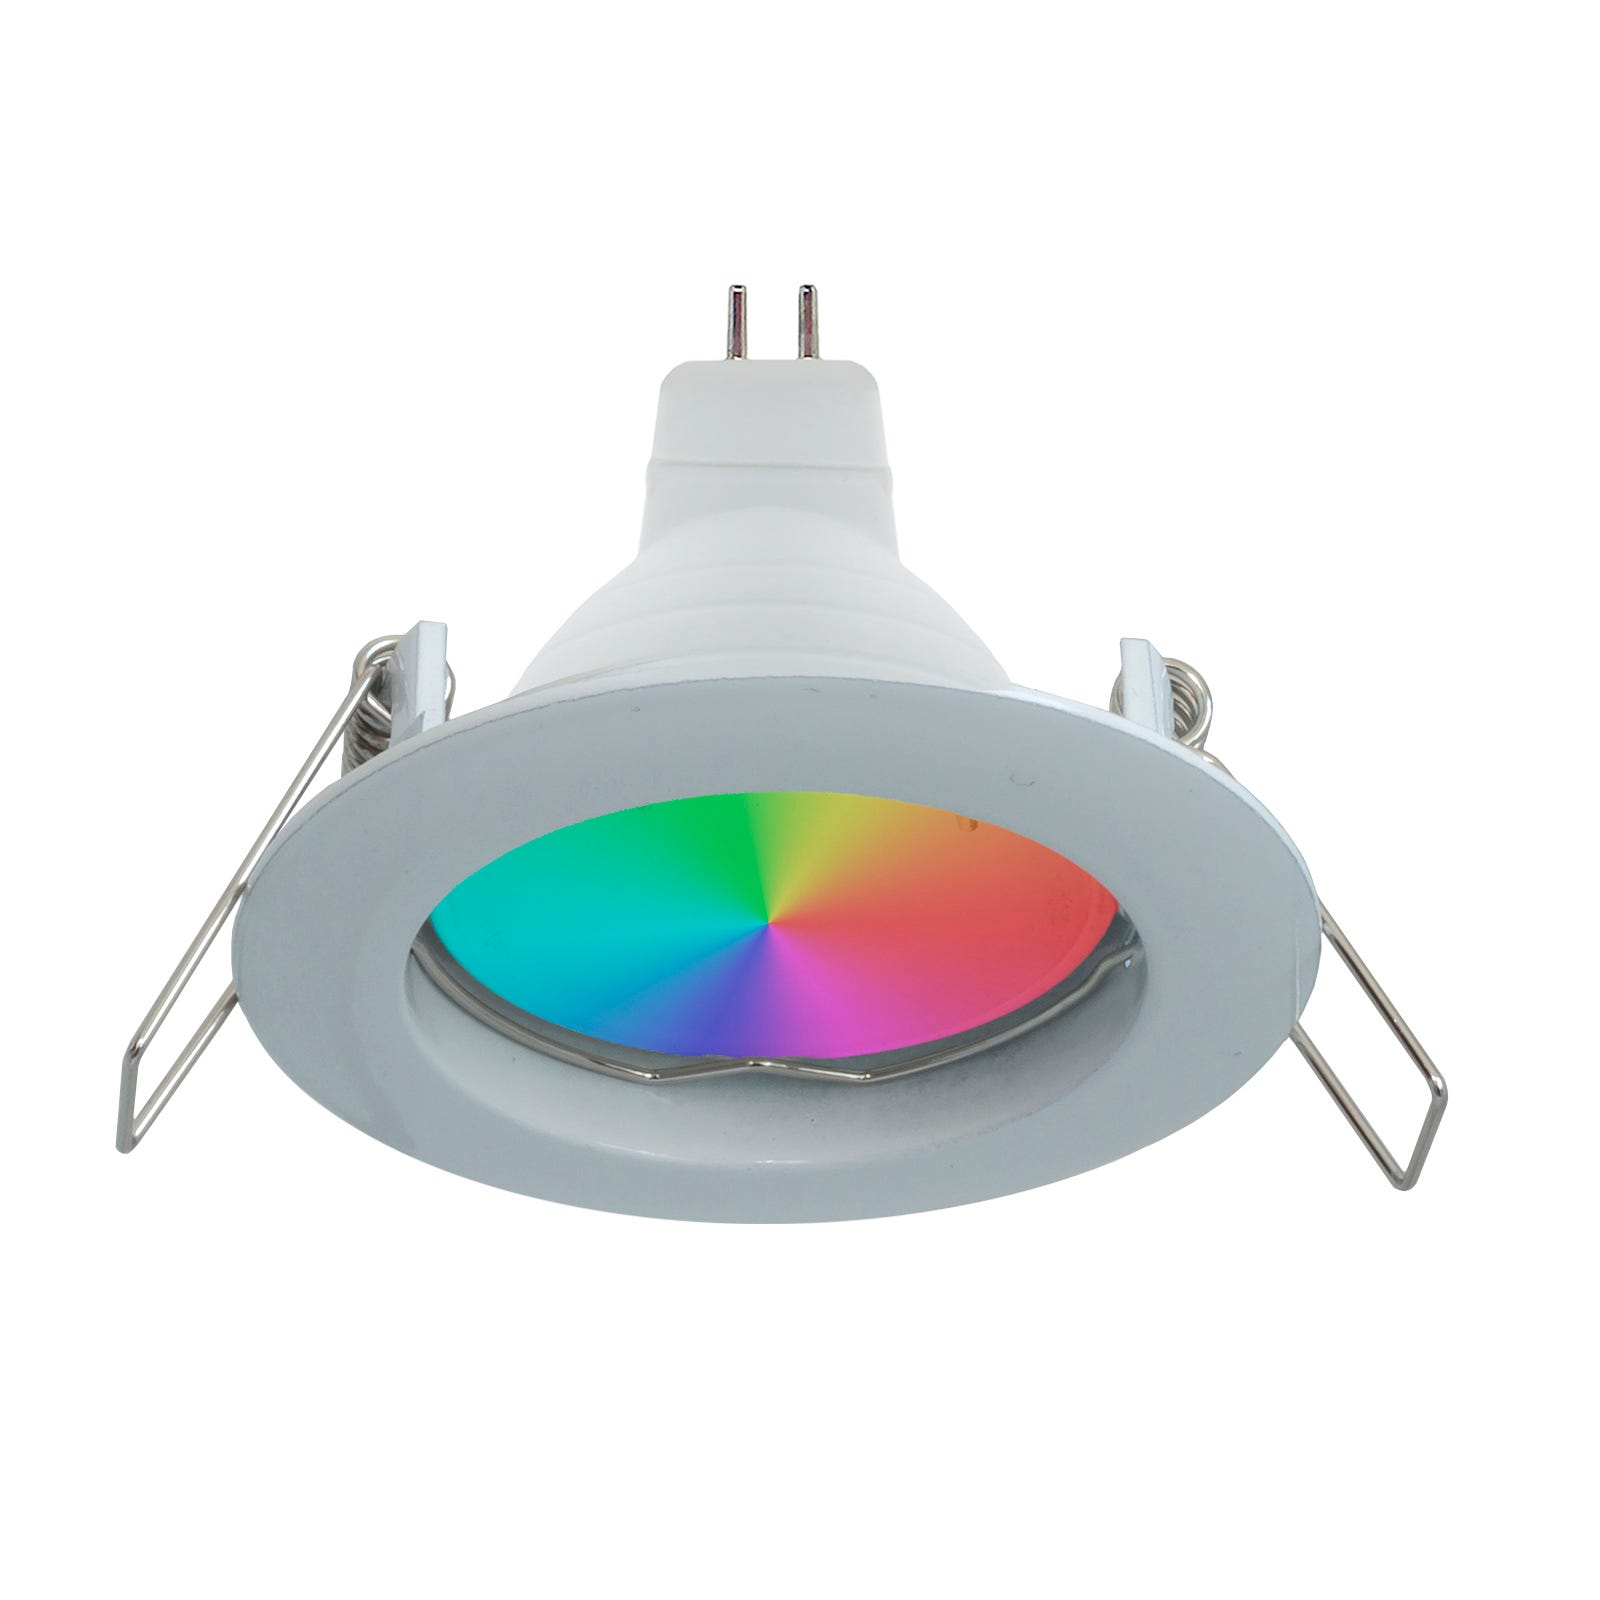 Spot LED RGB 6W multicolore 12V encastré 6cm rond blanc argenté